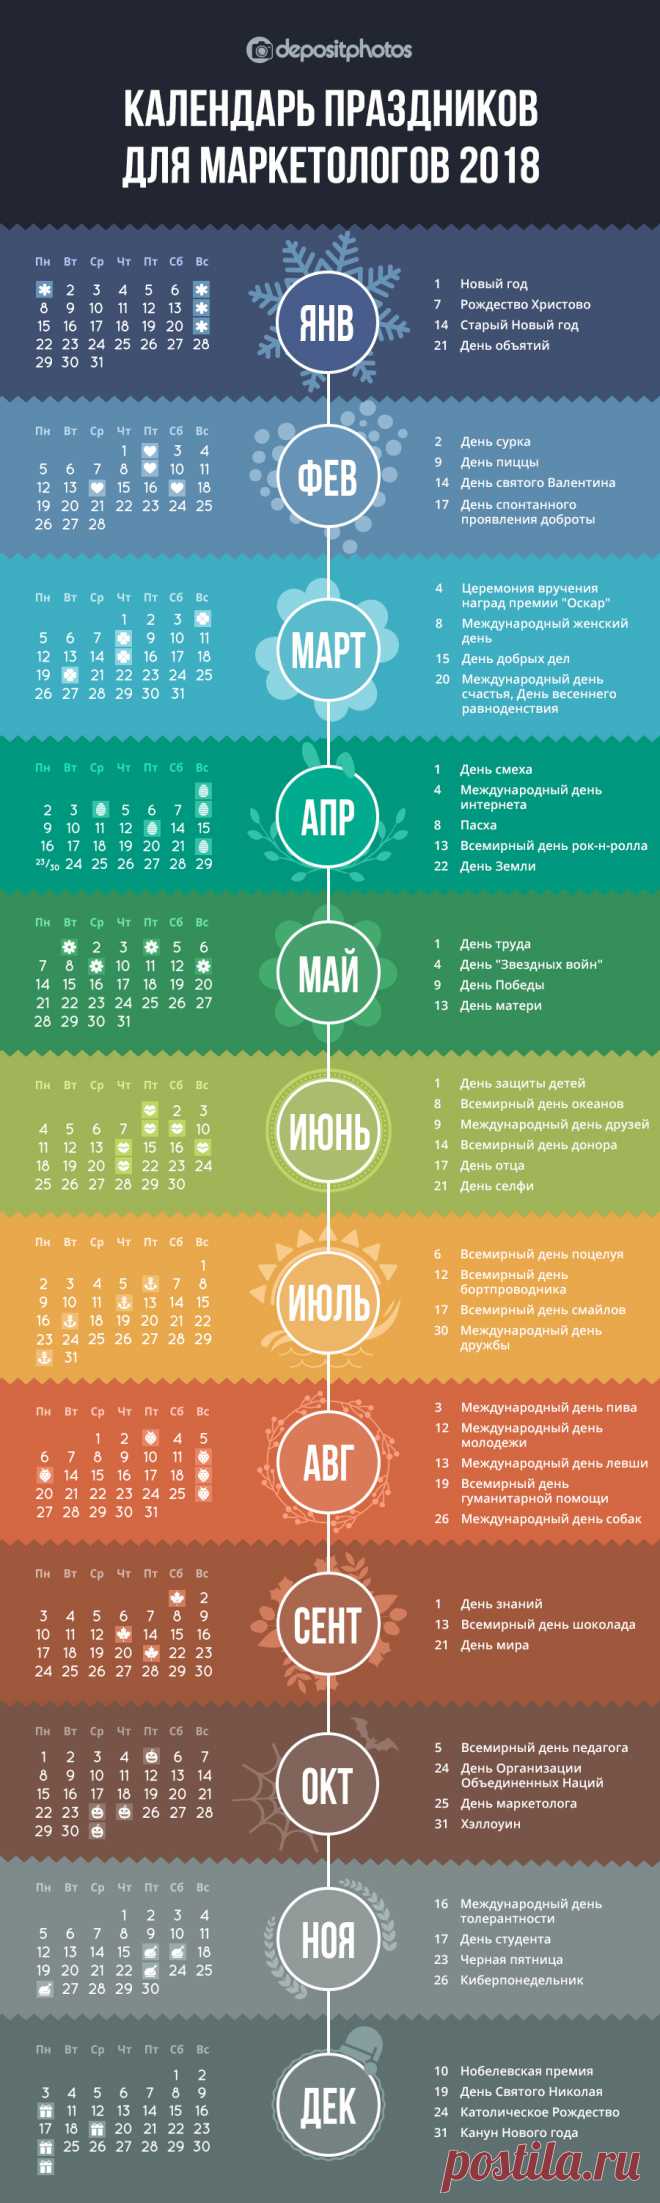 Календарь праздников для маркетологов на 2018 год [Инфографика] - Блог Depositphotos